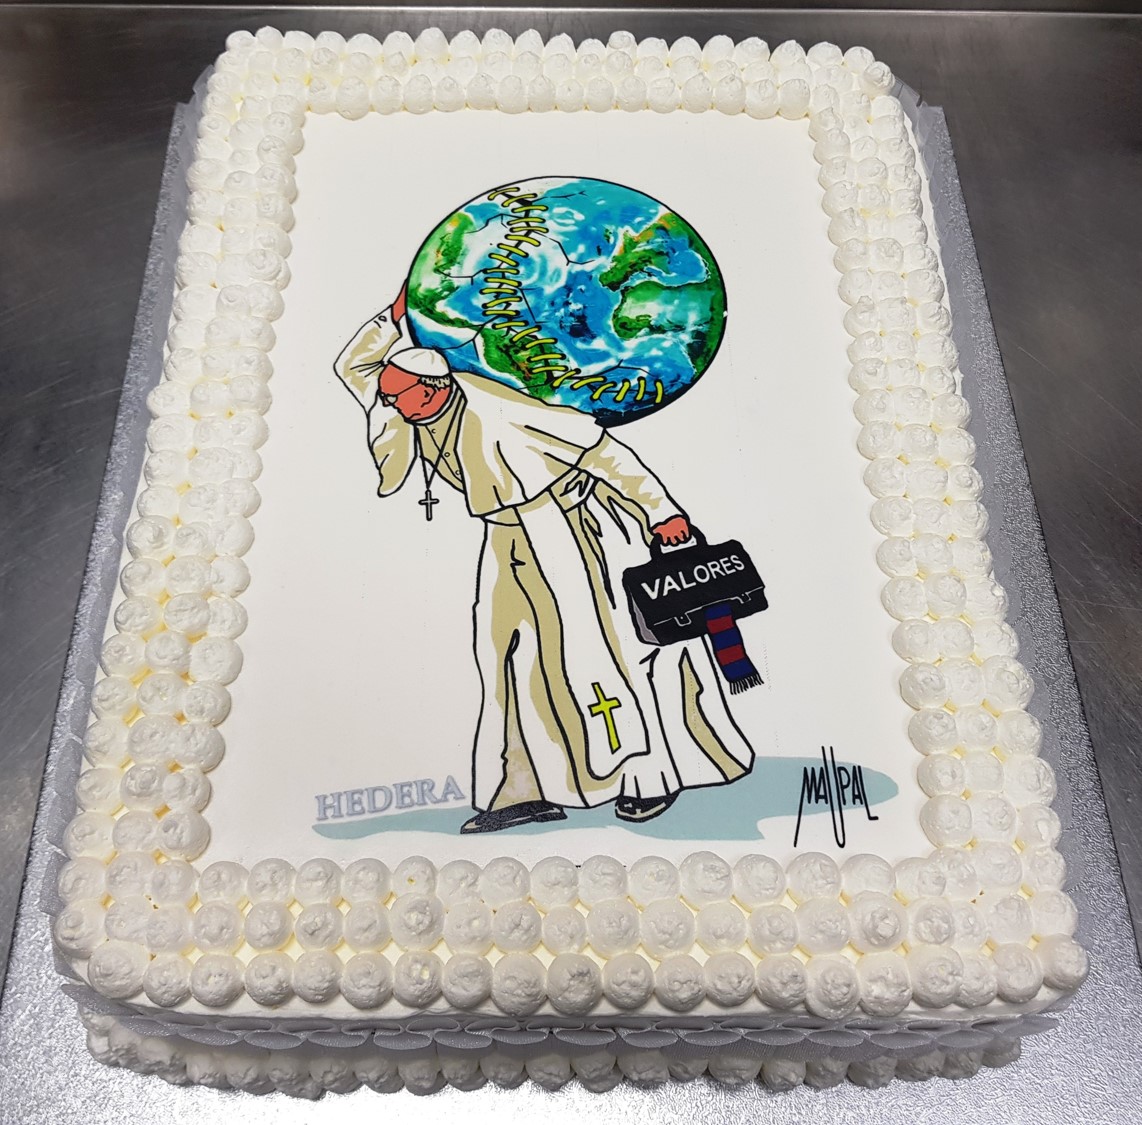 La torta per gli 81 anni del papa